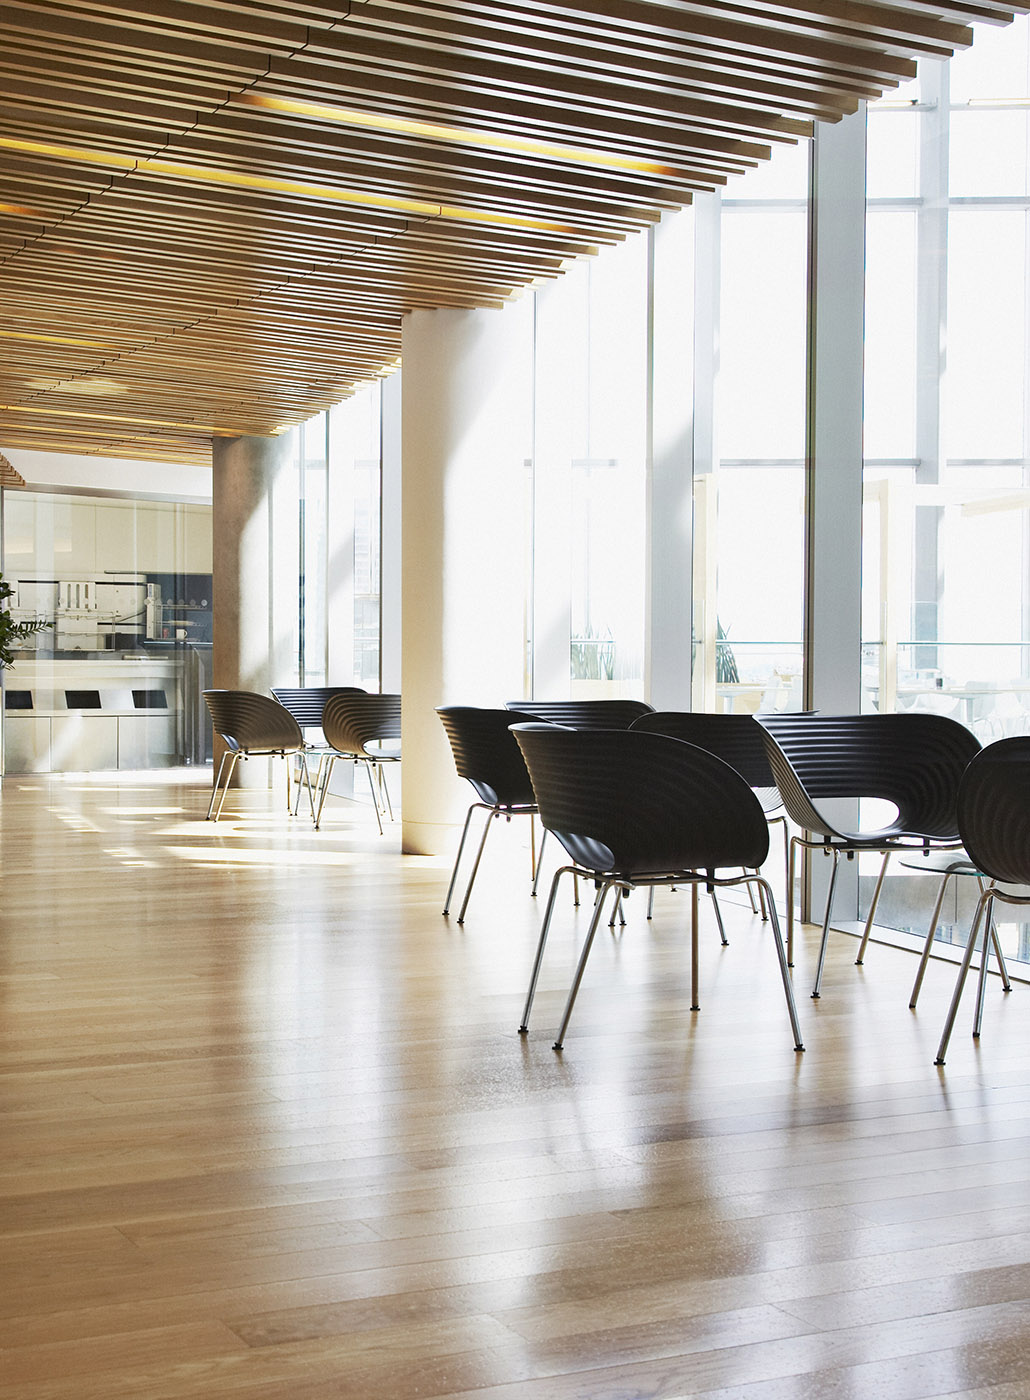 Stühle auf einem Hartholzboden in einem gut beleuchteten modernen Büroflur.